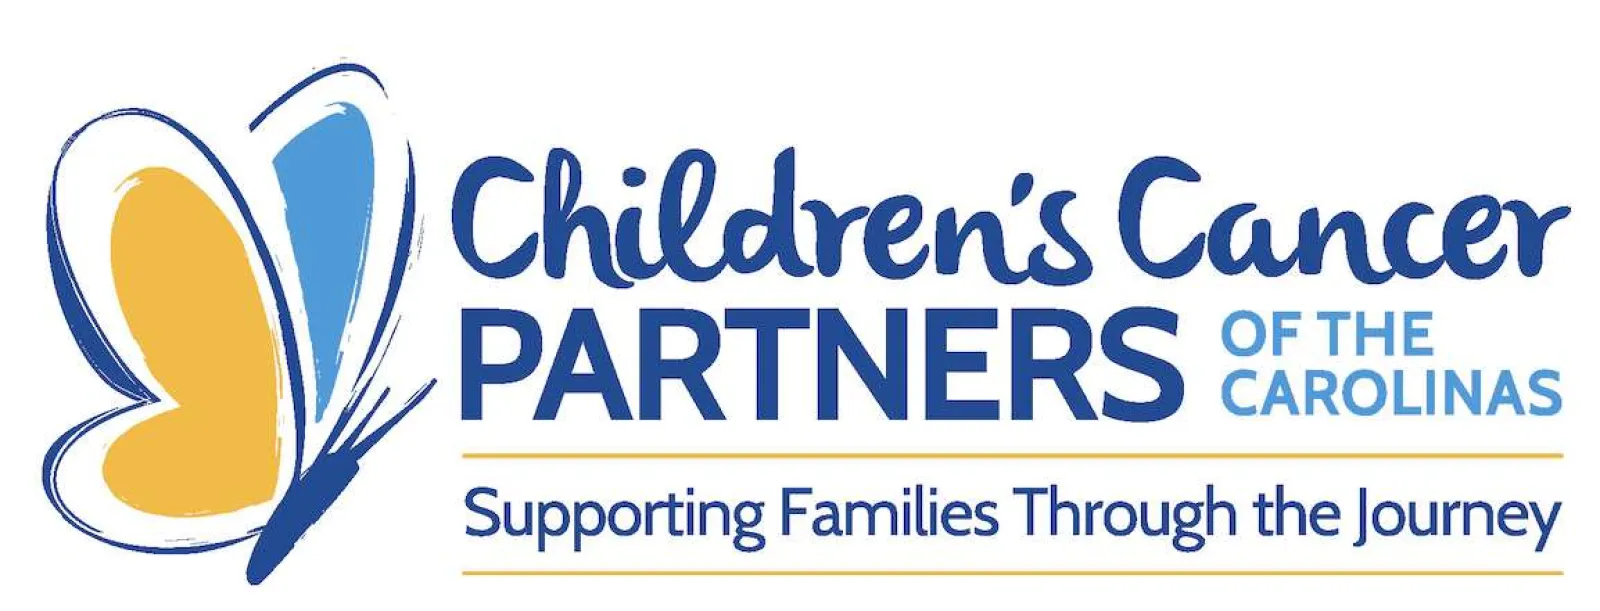 Children's Cancer Partners Of The Carolinas logo